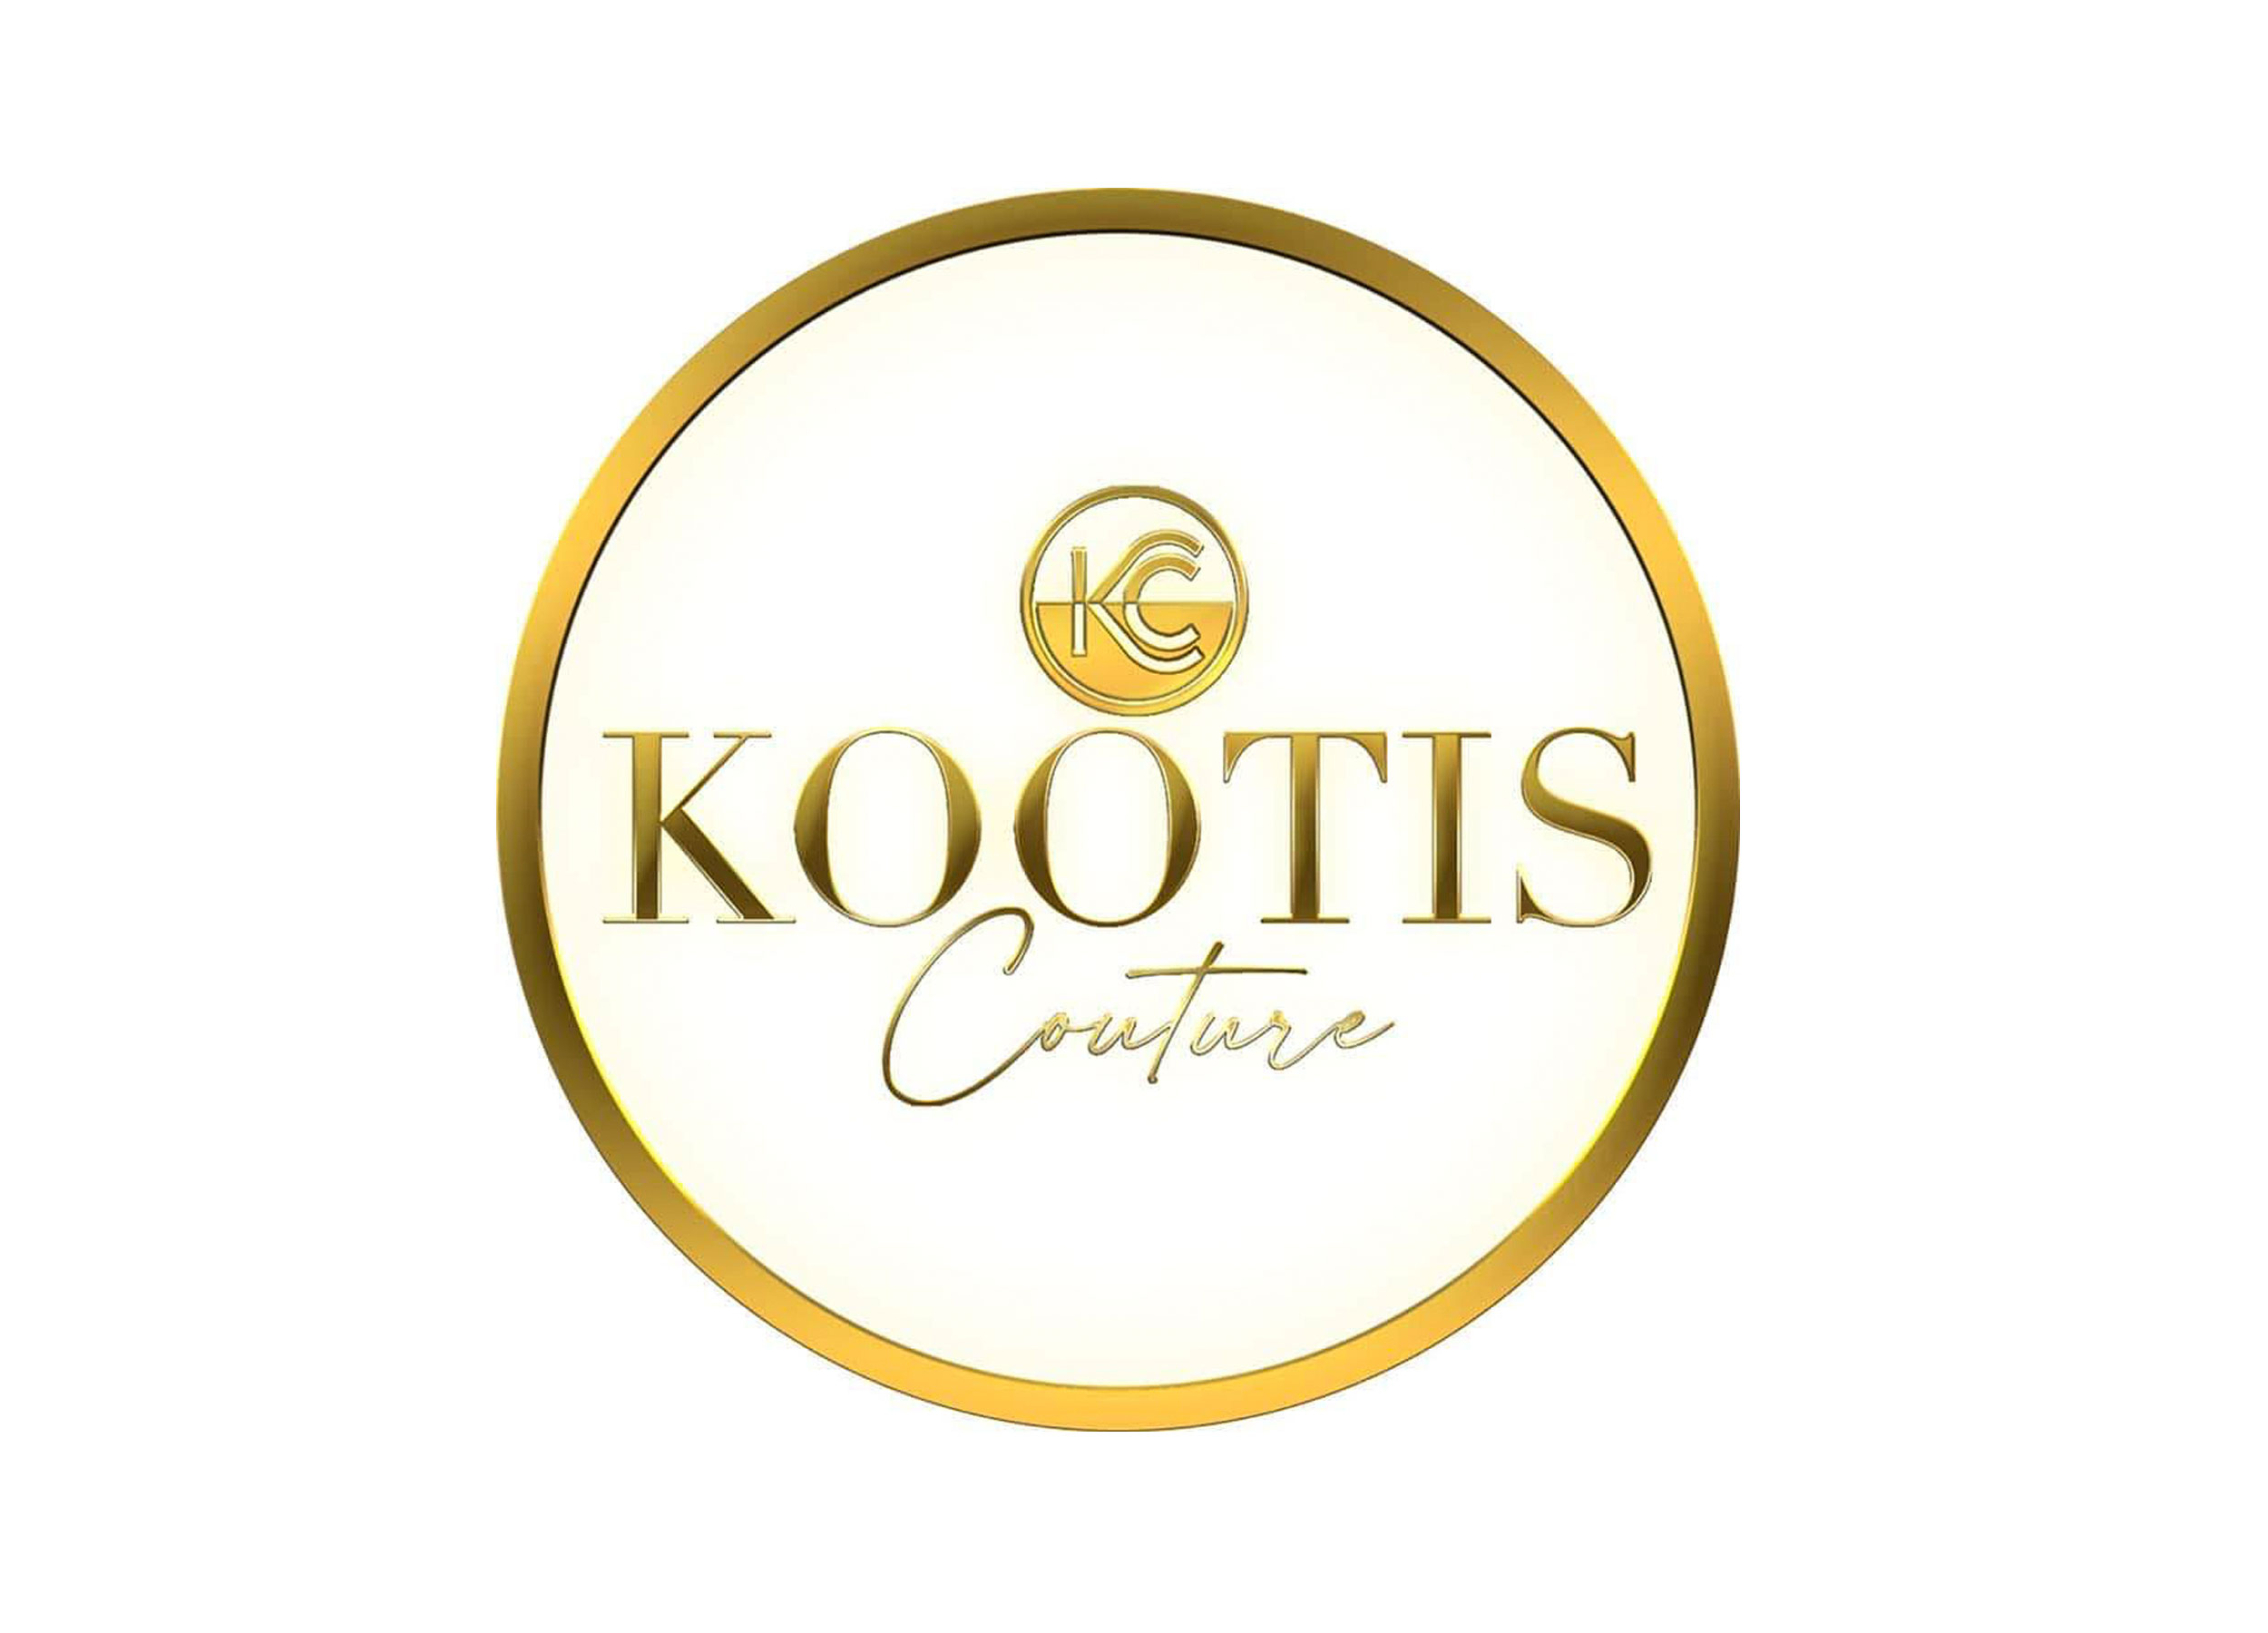 KOOTIS Clothing